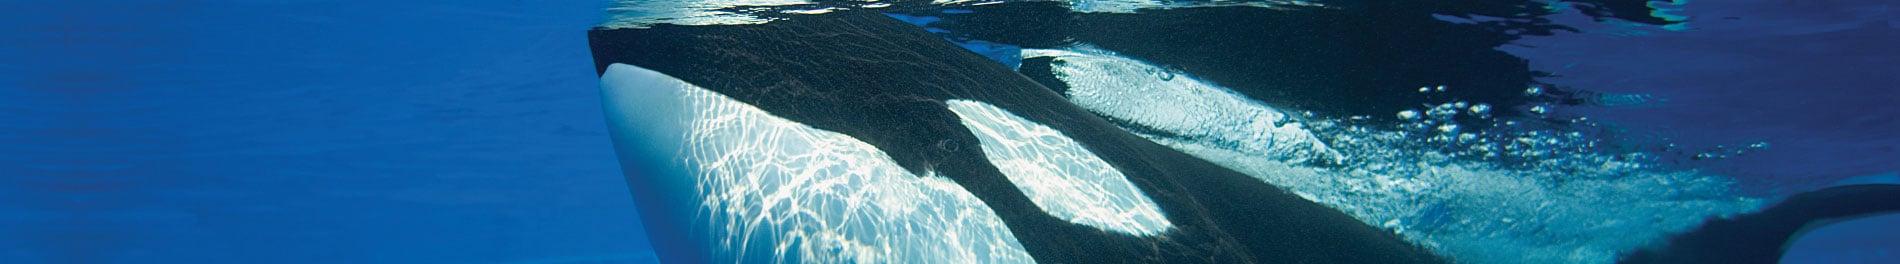 Orca Encounter 1